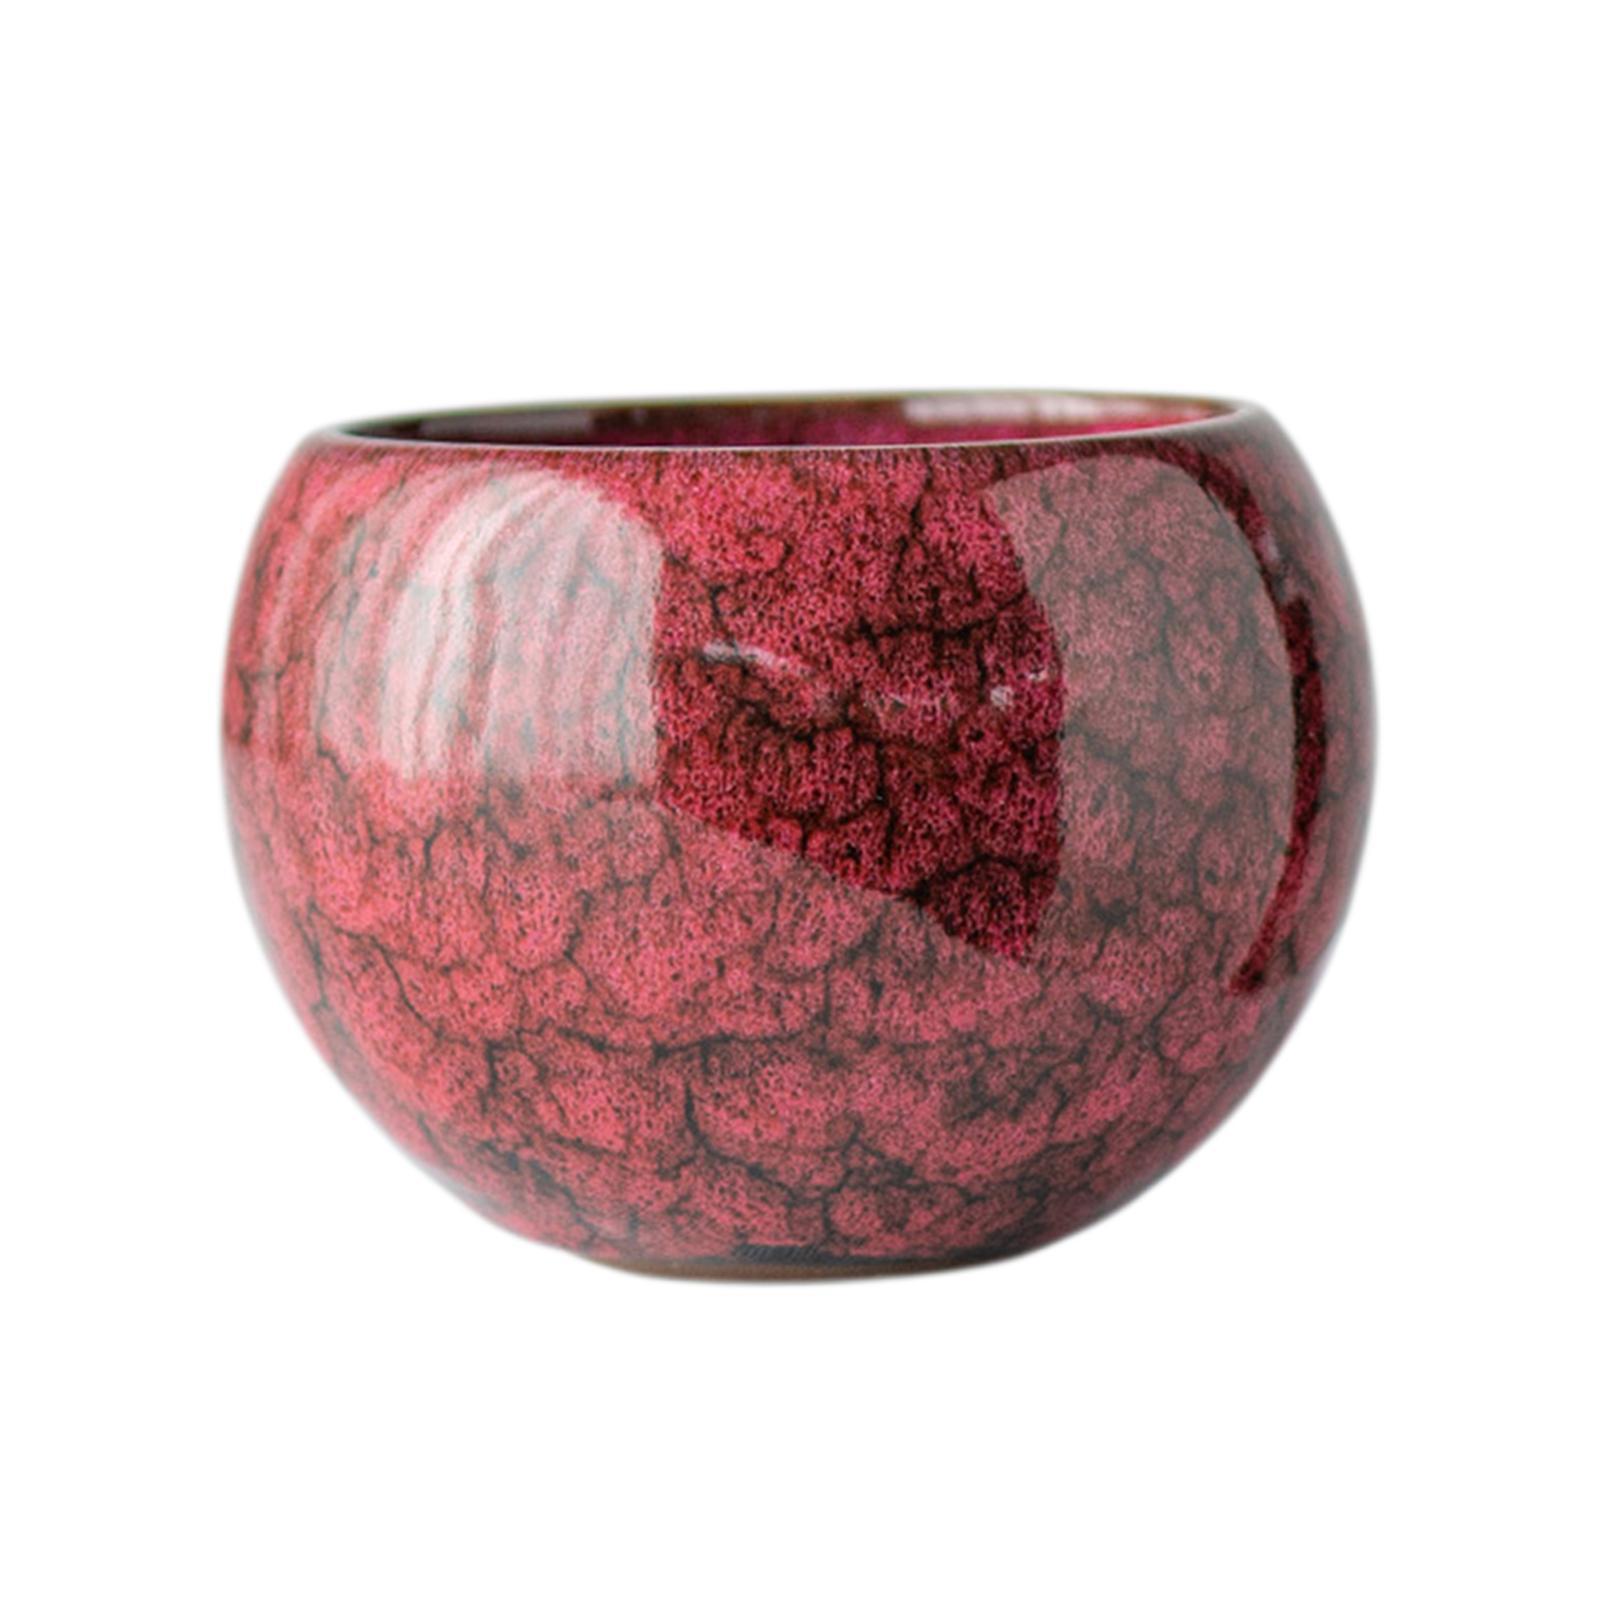 Ceramic Tea Cup Drink Drinkware Vintage Style Tabletop Living Room Teacup - Red